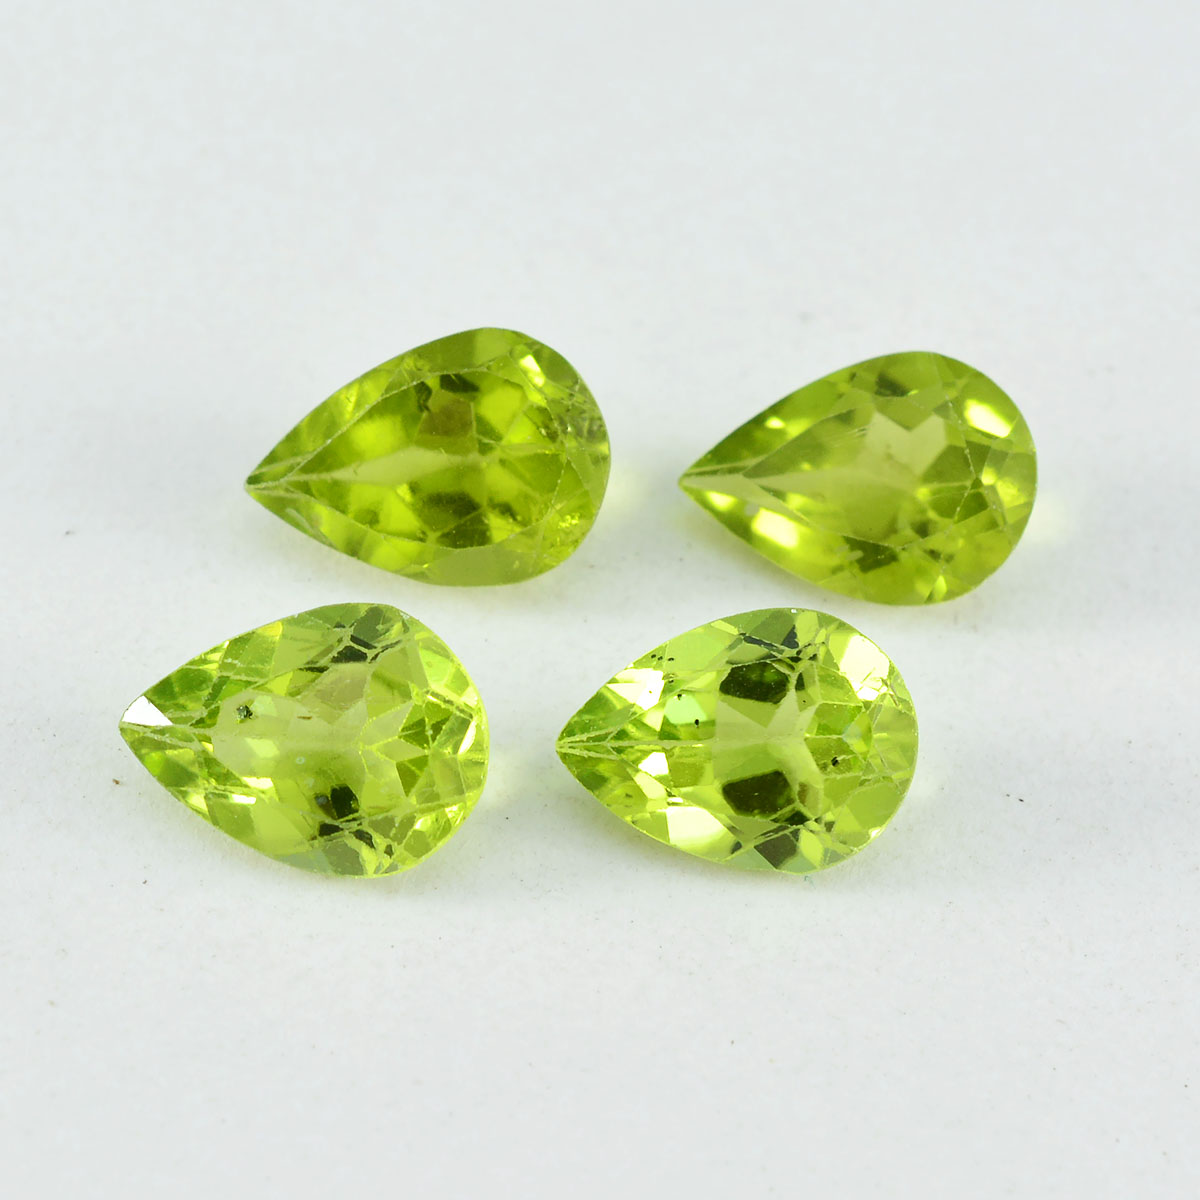 riyogems 1 шт. натуральный зеленый перидот граненый 7x10 мм драгоценный камень грушевидной формы замечательного качества